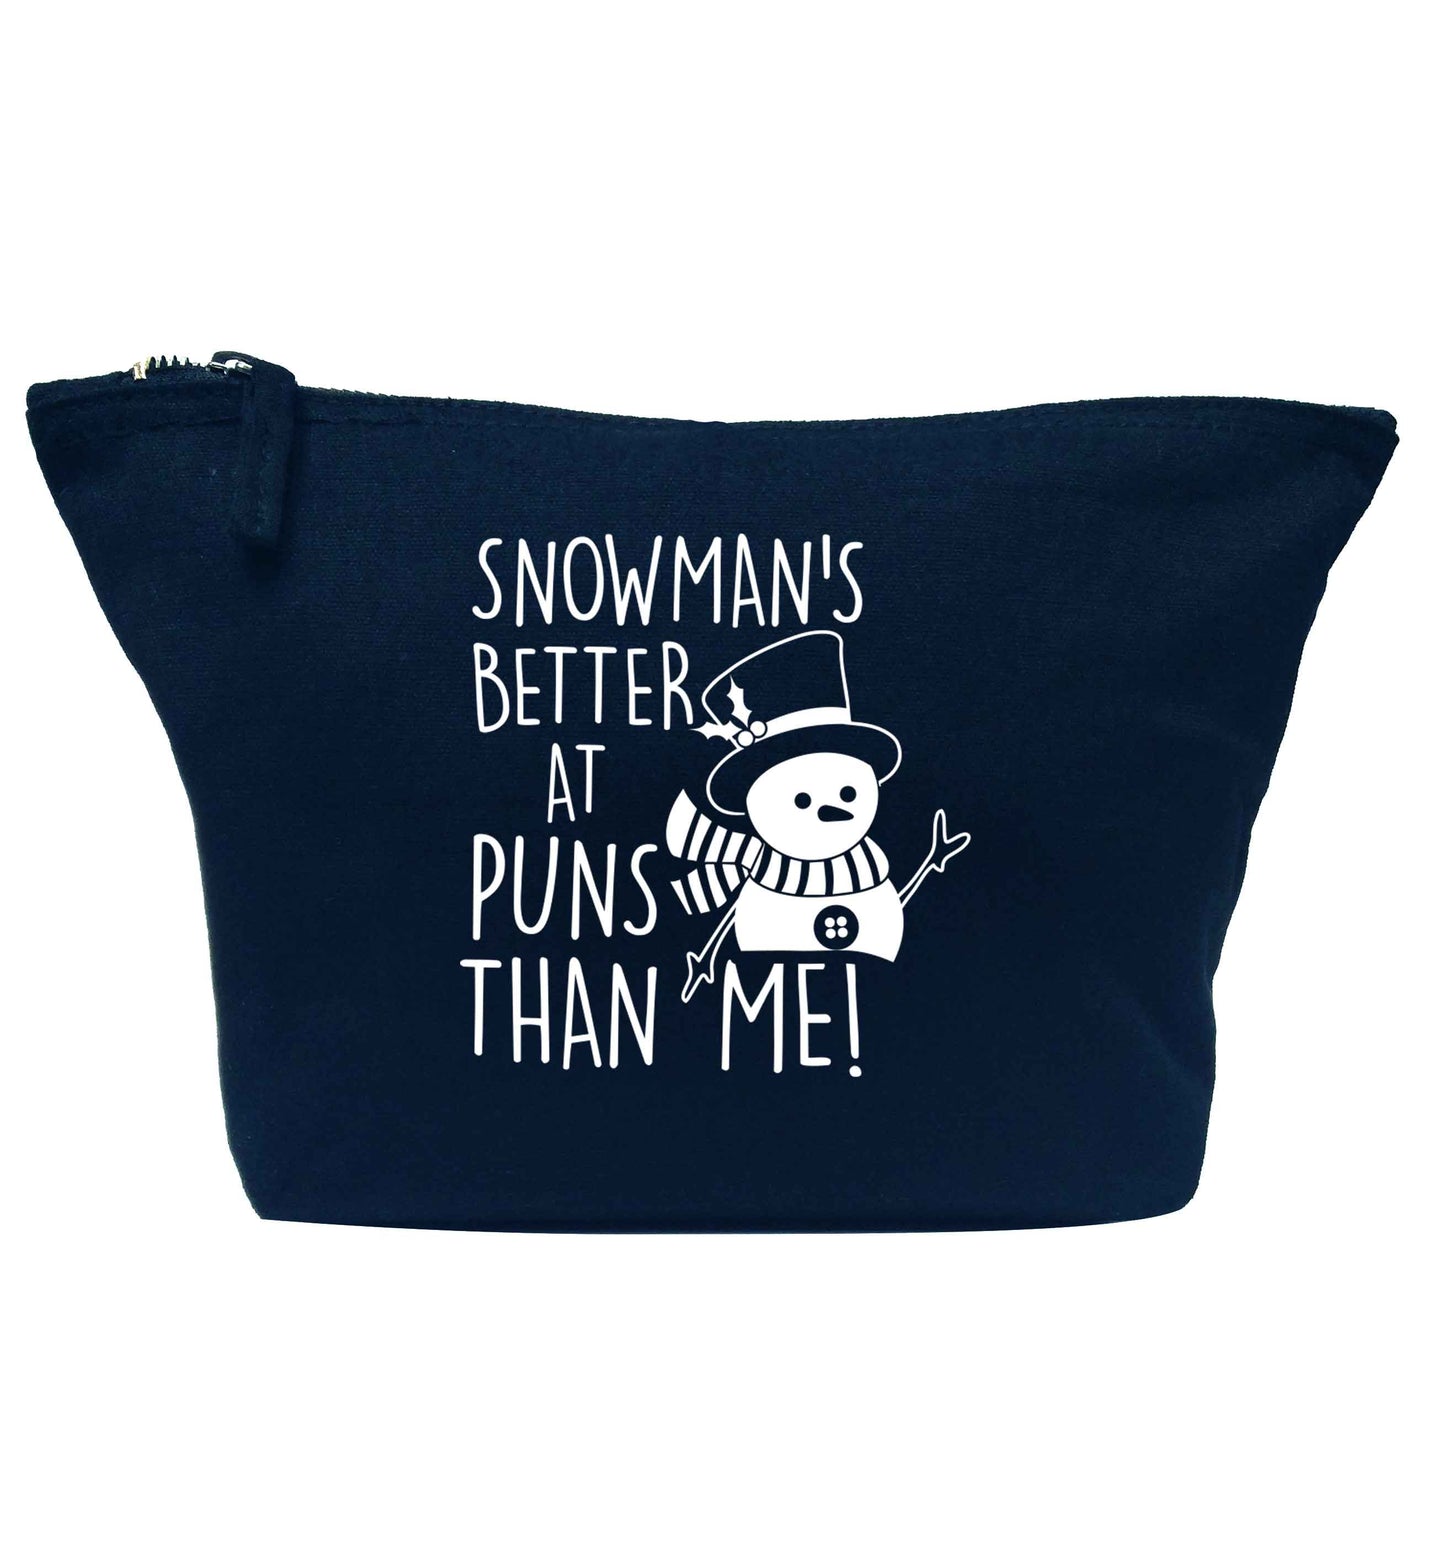 Snowman's Puns Me navy makeup bag